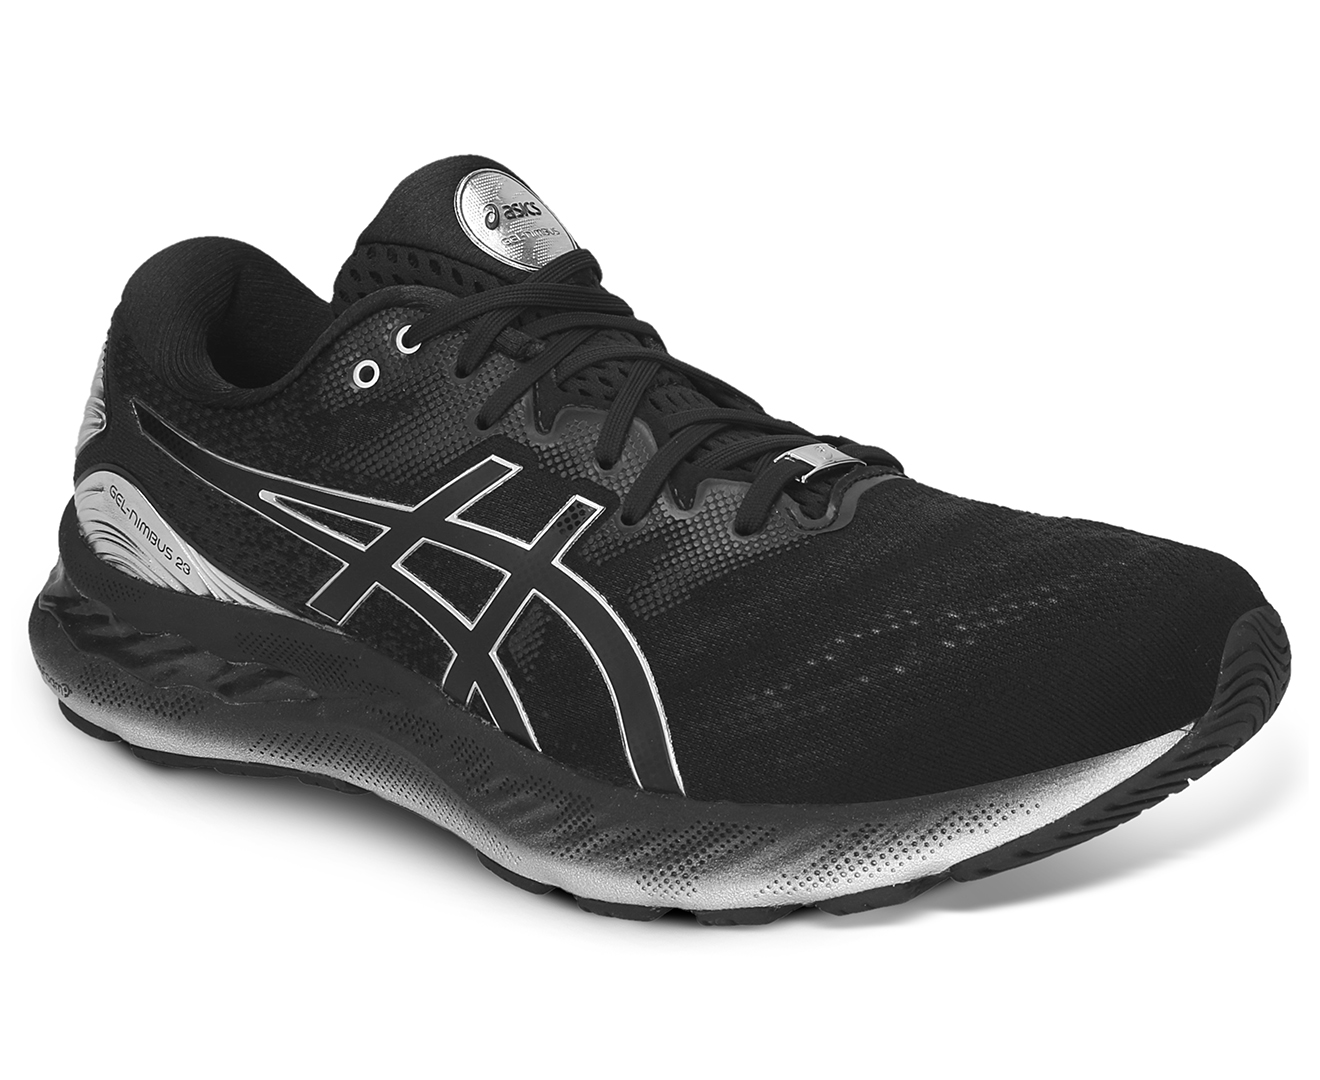 ASICS Men's GEL-Nimbus 23 Platinum Running Shoes - Black/Pure Silver | Catch.com.au